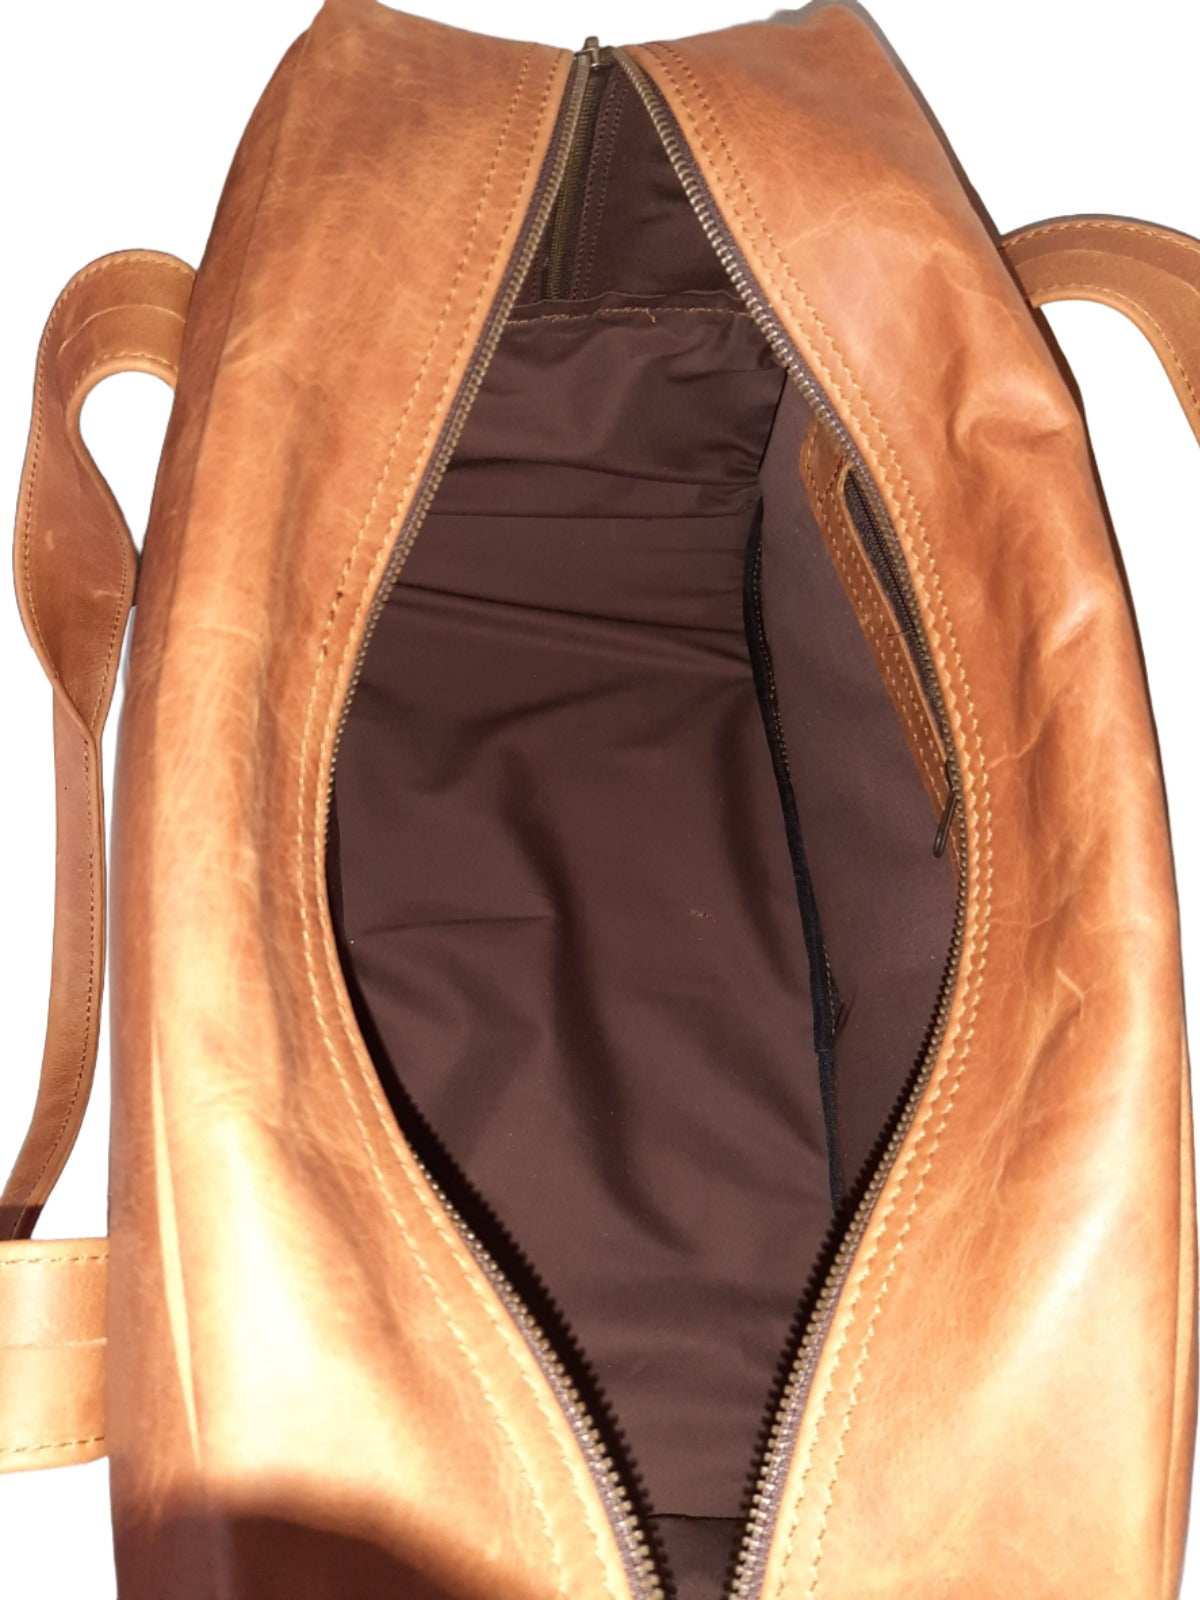 Cape Executive Traveler Bag - Cape Masai Leather 